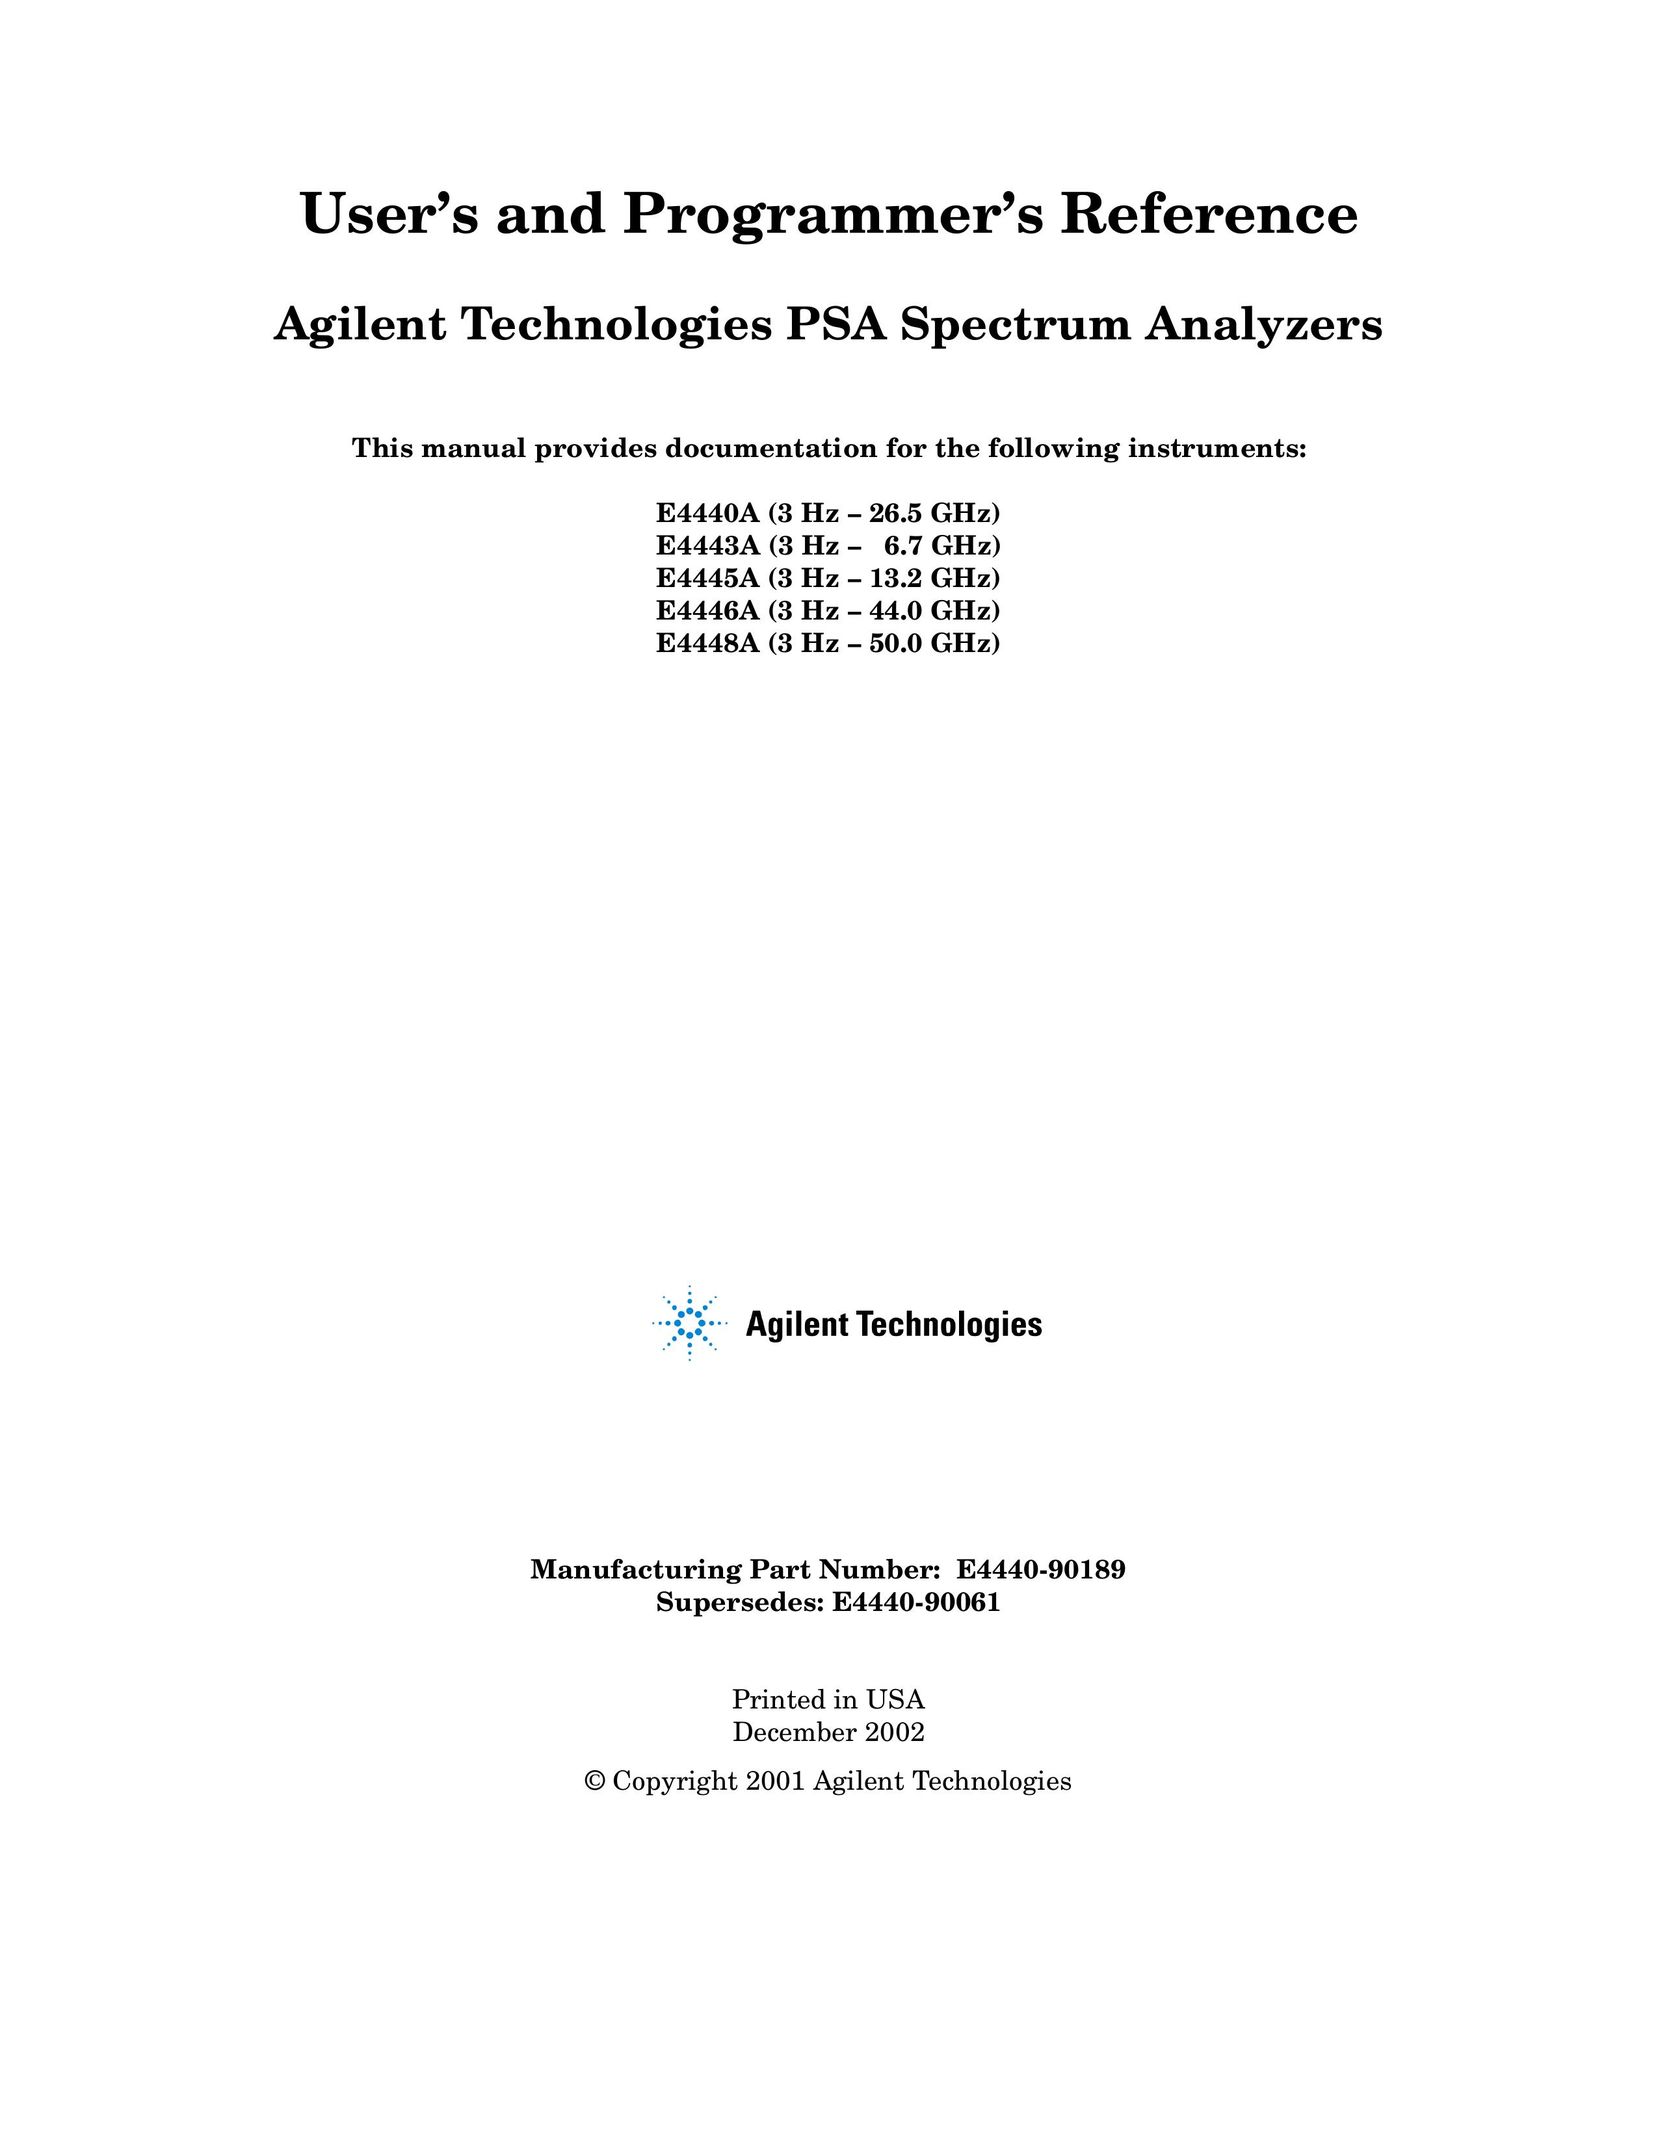 Agilent Technologies E4440A Saw User Manual